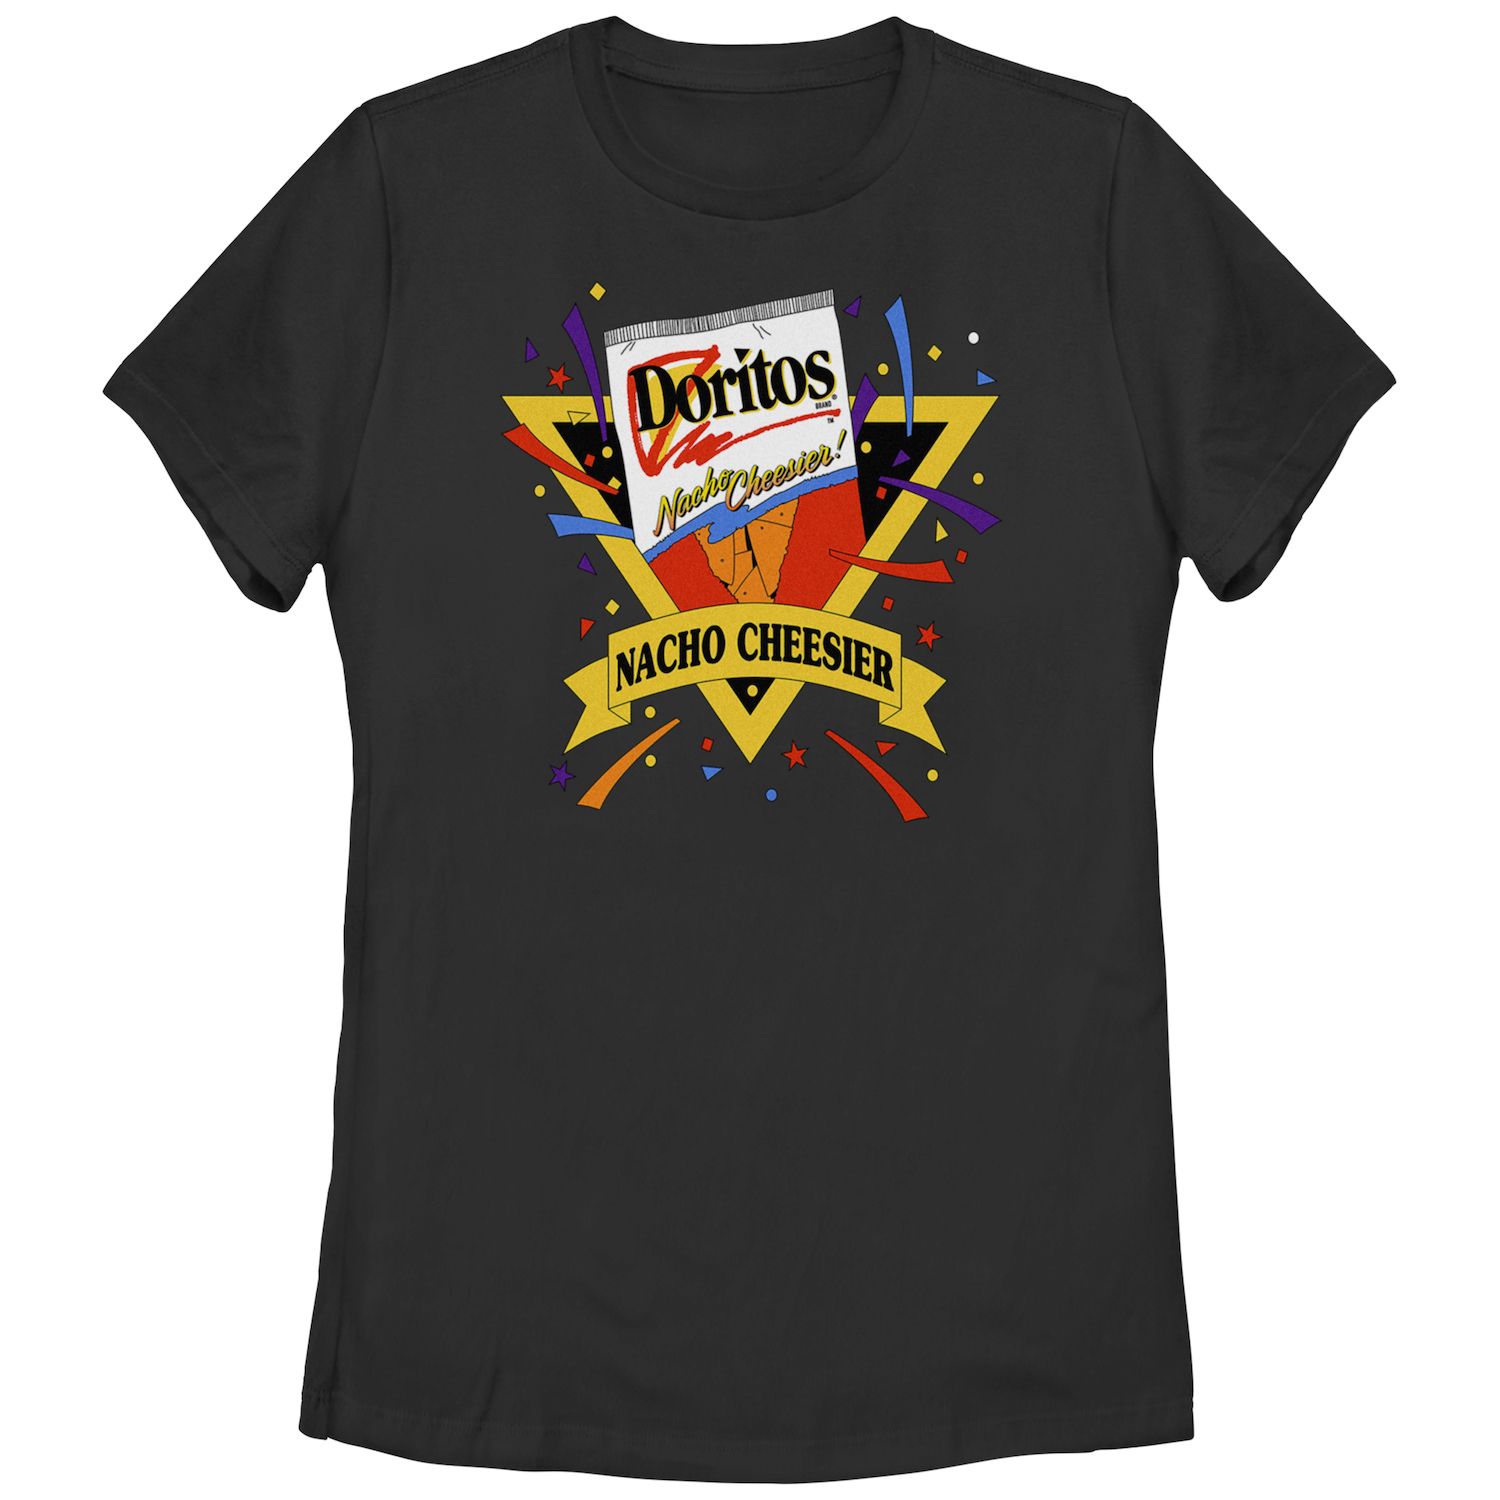 Детская футболка Doritos Nacho Cheesier с винтажным графическим логотипом Doritos doritos кукурузные чипсы doritos паприка 100г